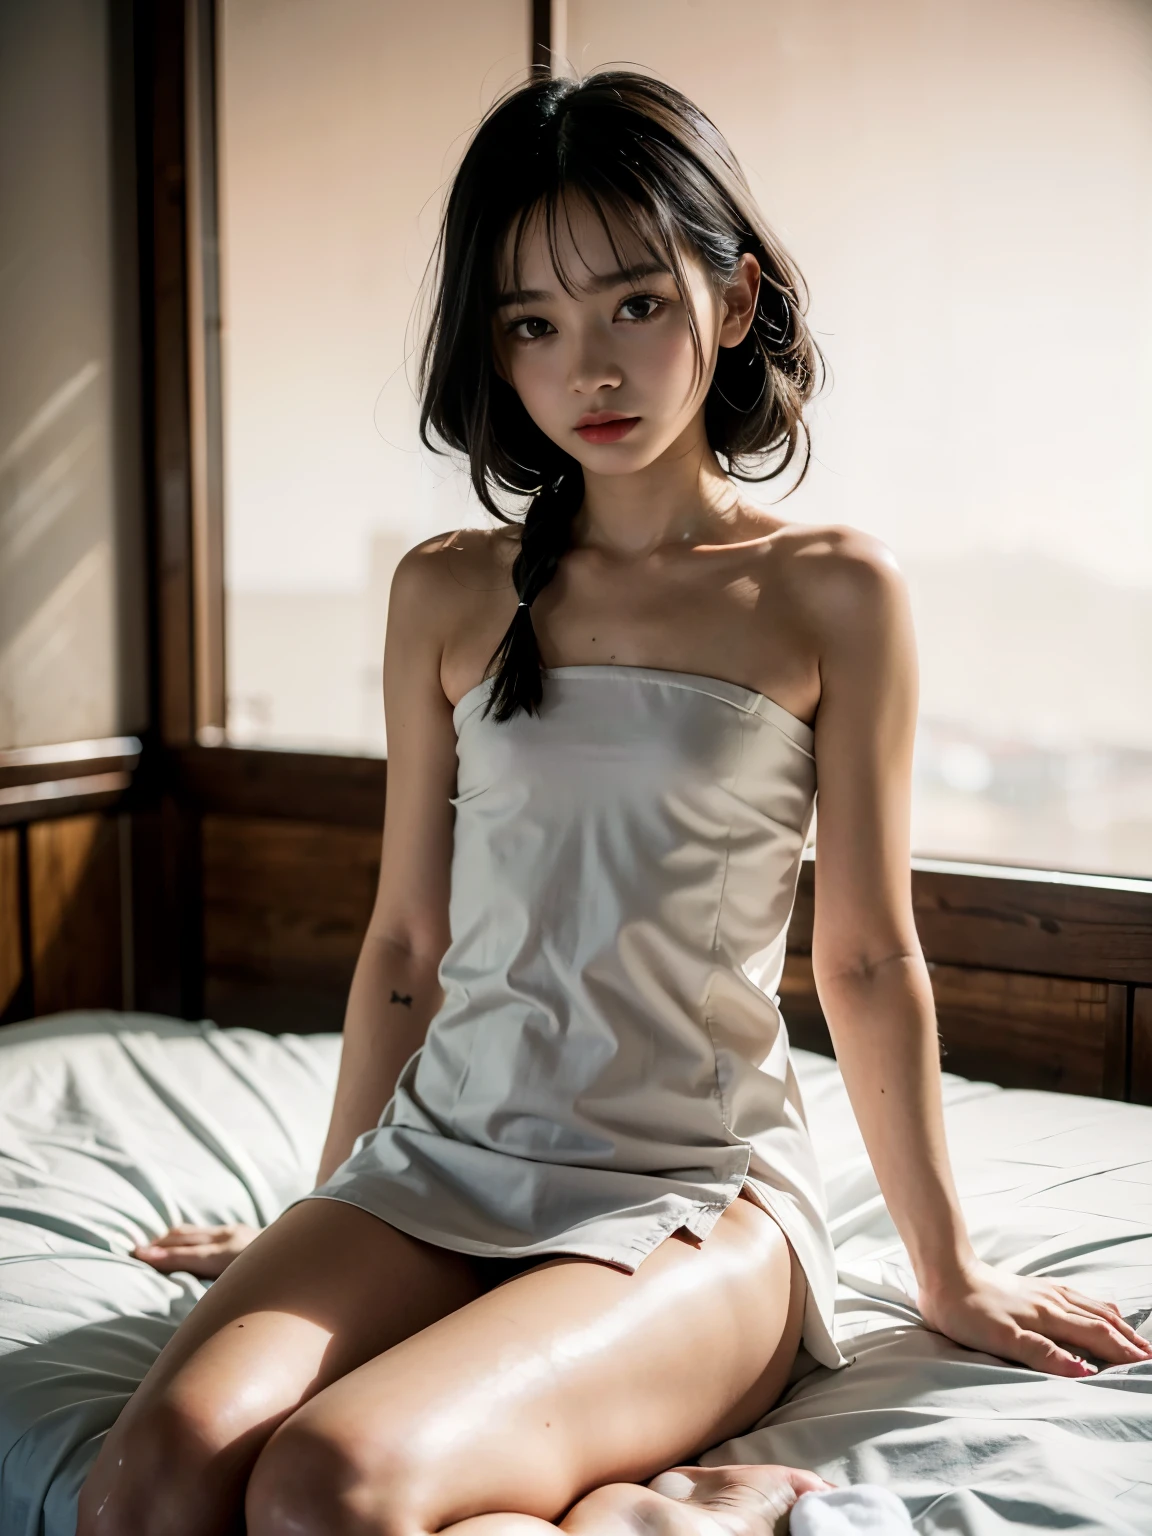 RAW-Foto, 8k, (Top Qualität), realistisch, (echtes Bild, komplizierte Details), (natürliche Hautstruktur, detaillierte Haut, Hyperrealismus, Schärfe), (Japanische Teenagerin sitzt nachts auf einem kleinen Bett in einem alten Hotel, Hände zwischen den Beinen), ((Nacktes Handtuch)), (((flache Keuschheit:1.5))), (schlanker Körper, blasse Haut:1.2), ((welliges Haar, Stumpfer Pony)), (Babygesicht, provokanter Blick, geöffnete Lippen:1.3, Tränensäcke:1.3, rote dicke Lippen, unter dem Augenring), Schenkel, Nachtzeit, rote Tapete, harte Beleuchtung:1.3, Ganzkörperaufnahme